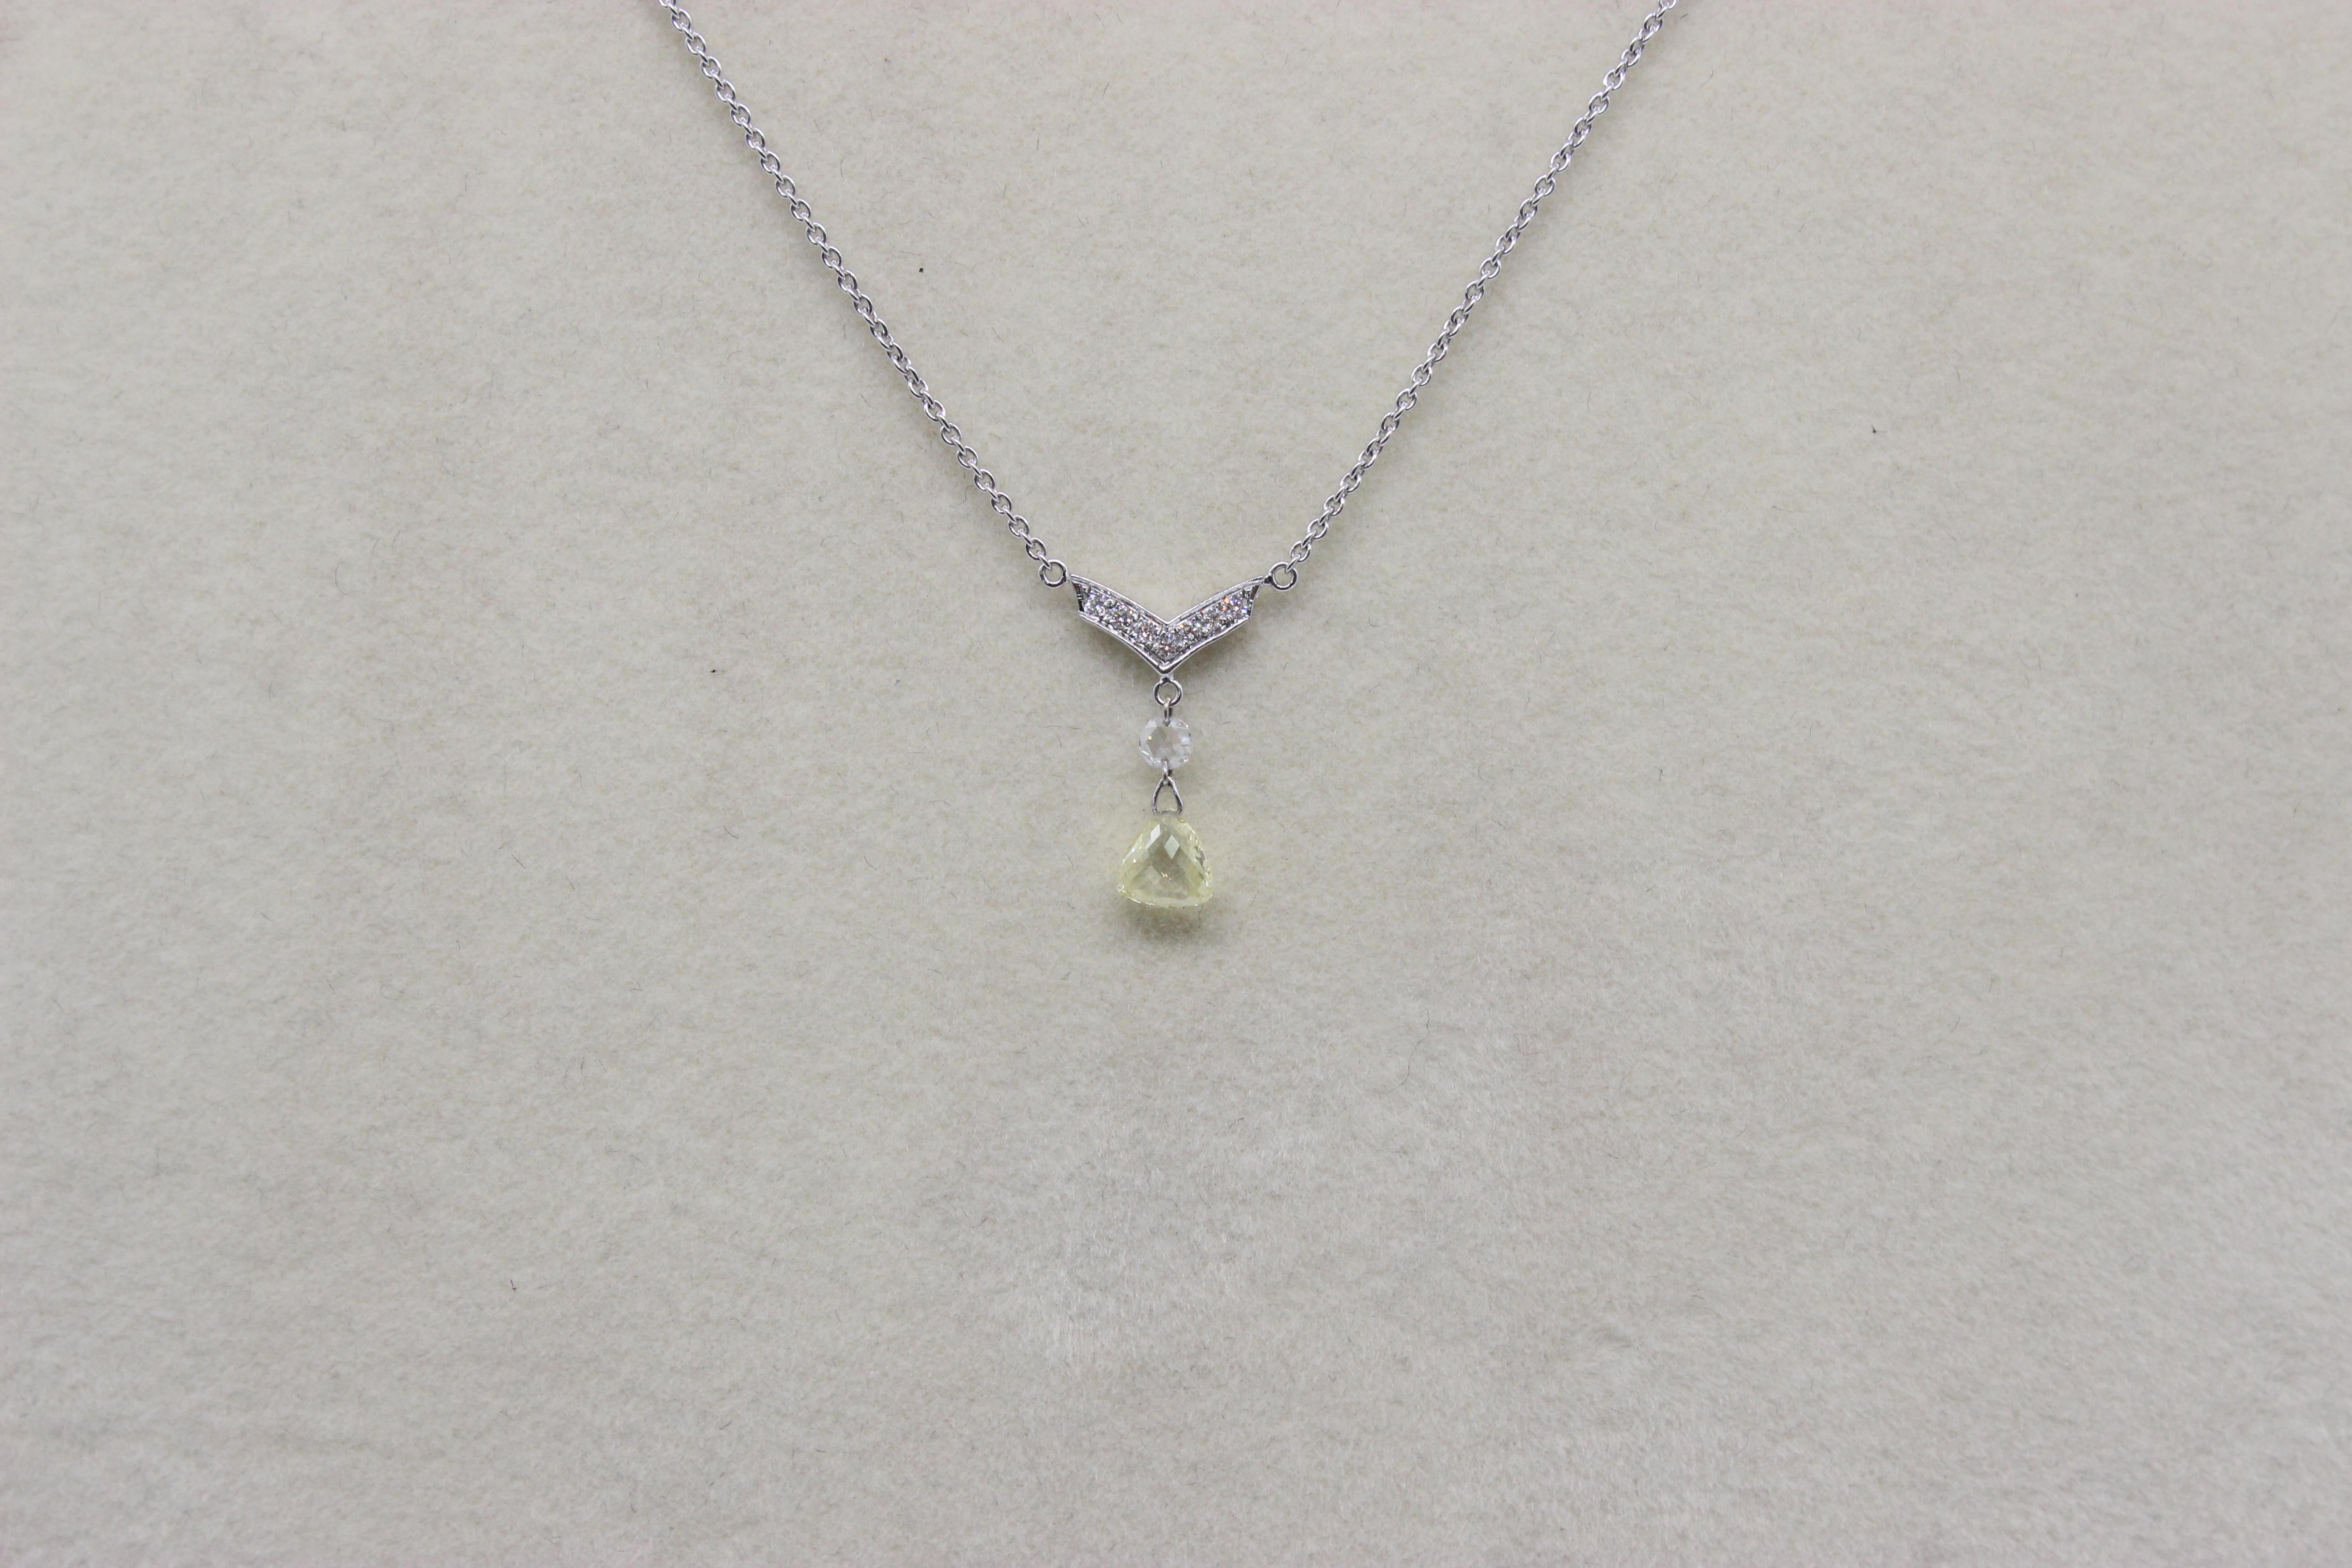 Briolette Cut PANIM 0.53 Carat Fancy Color Diamond Taviz 18K White Gold Pendant Necklace For Sale